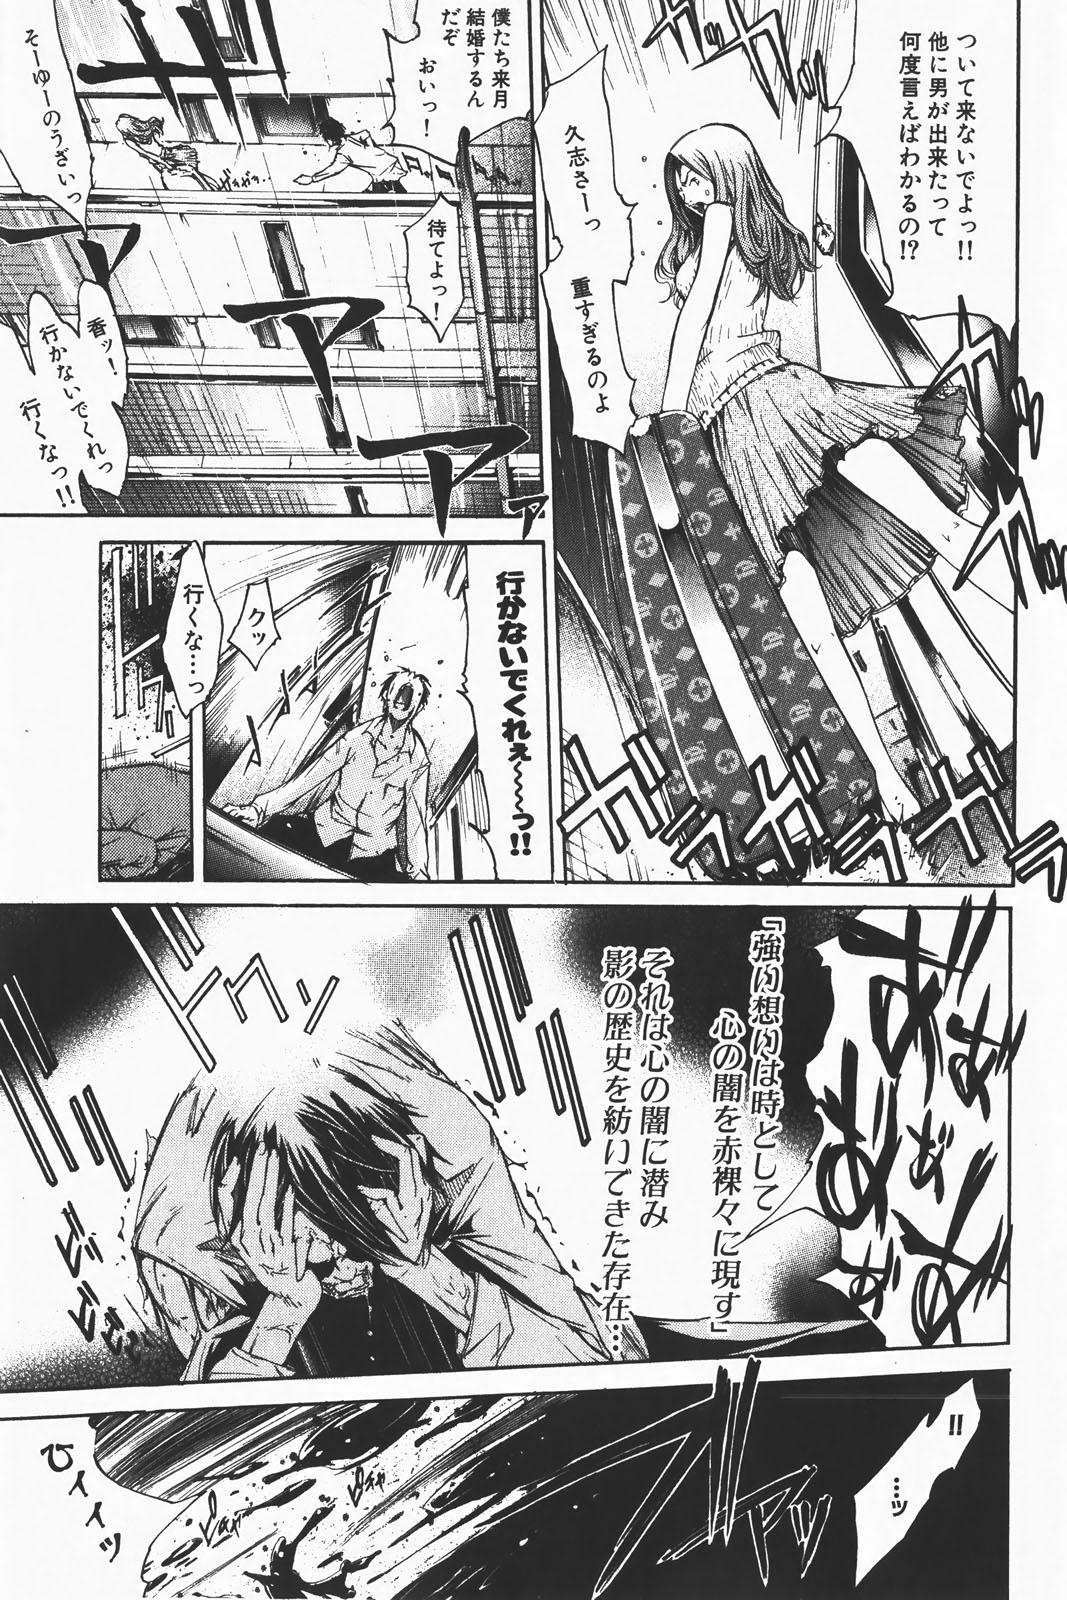 Chichona COMIC GEKI-YABA Vol. 01 Animated - Page 7